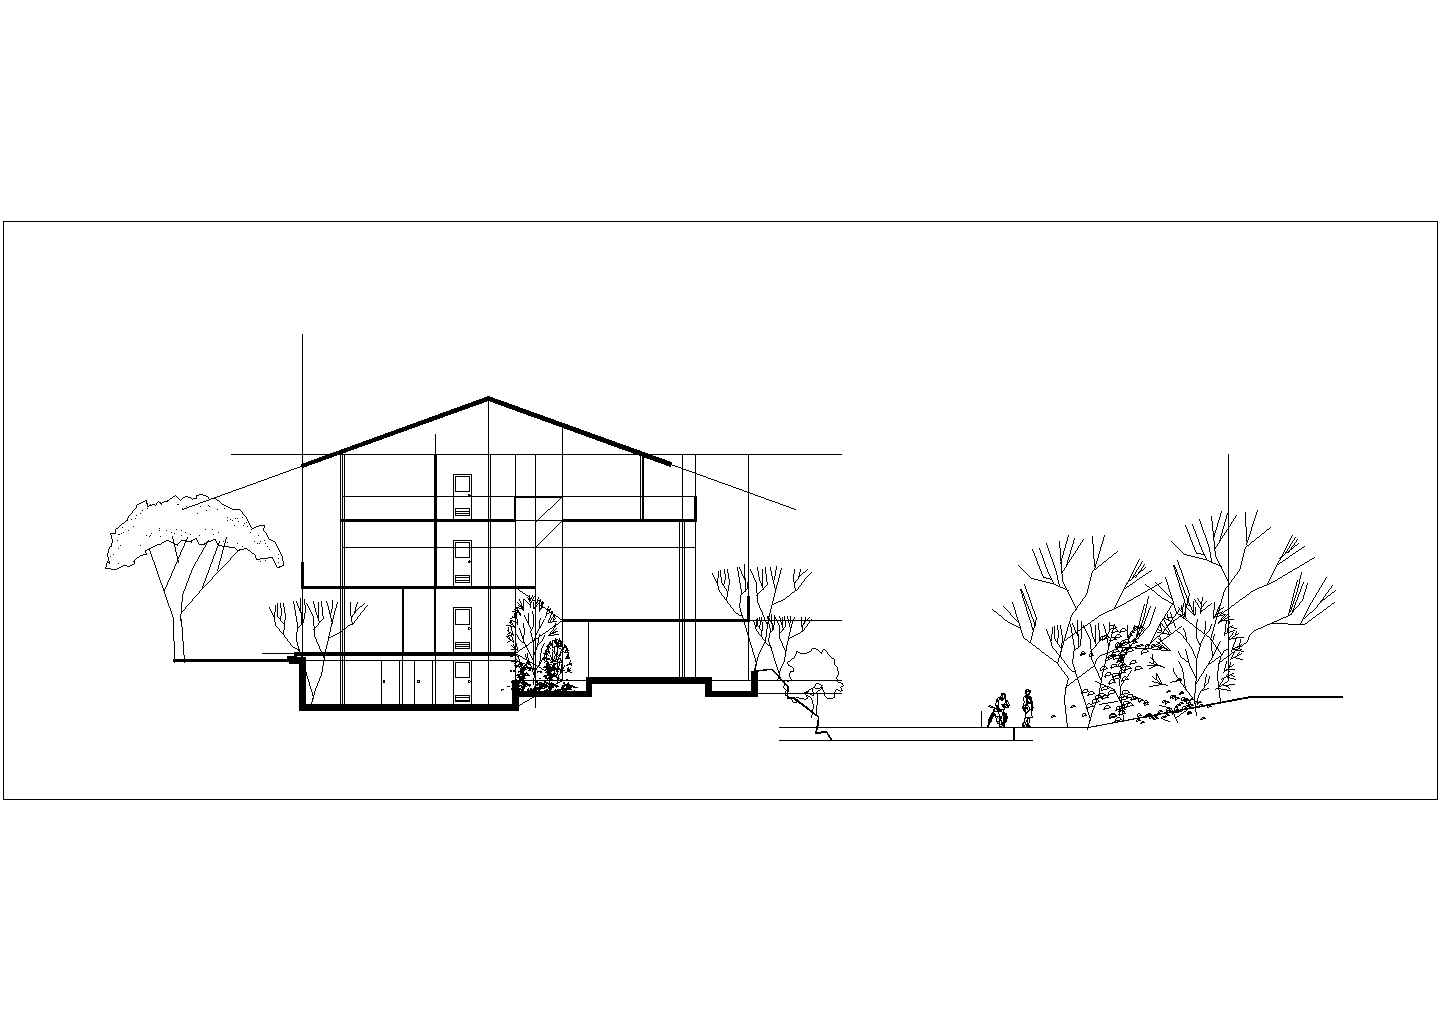 创意英国三期别墅区规划及单体设计方案